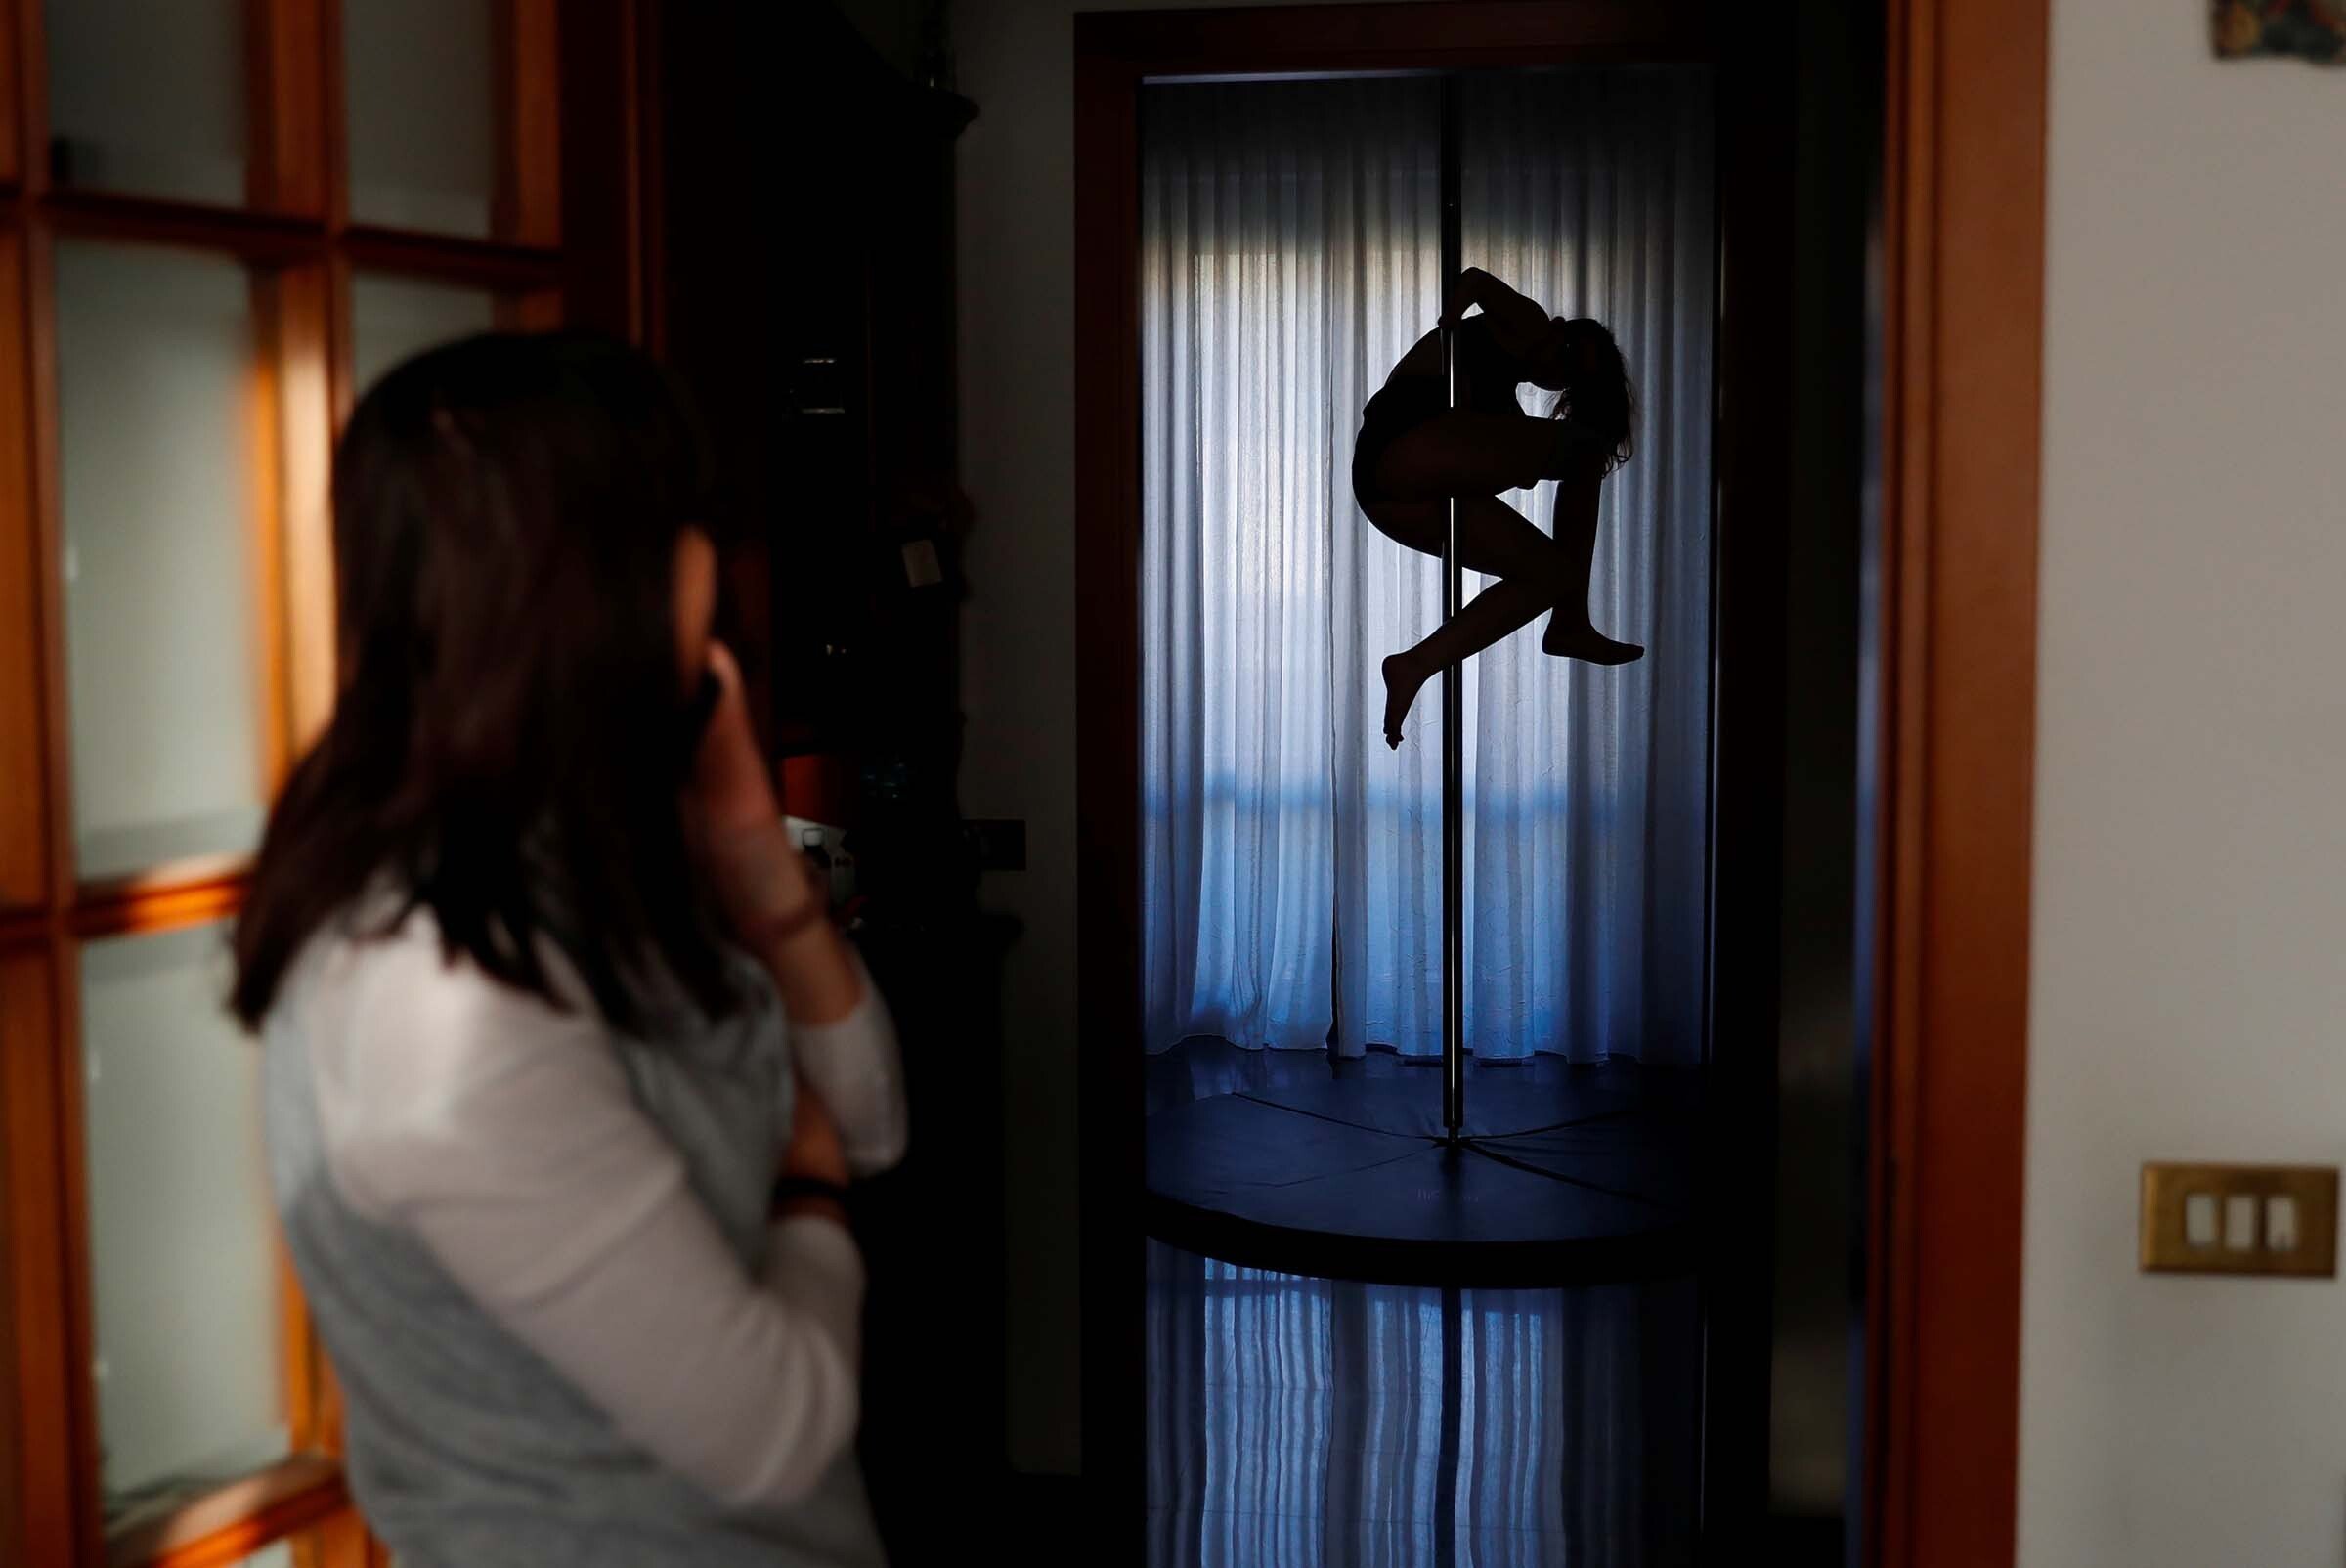 Francesca si allena a casa - foto di Yara Nardi/REUTERS